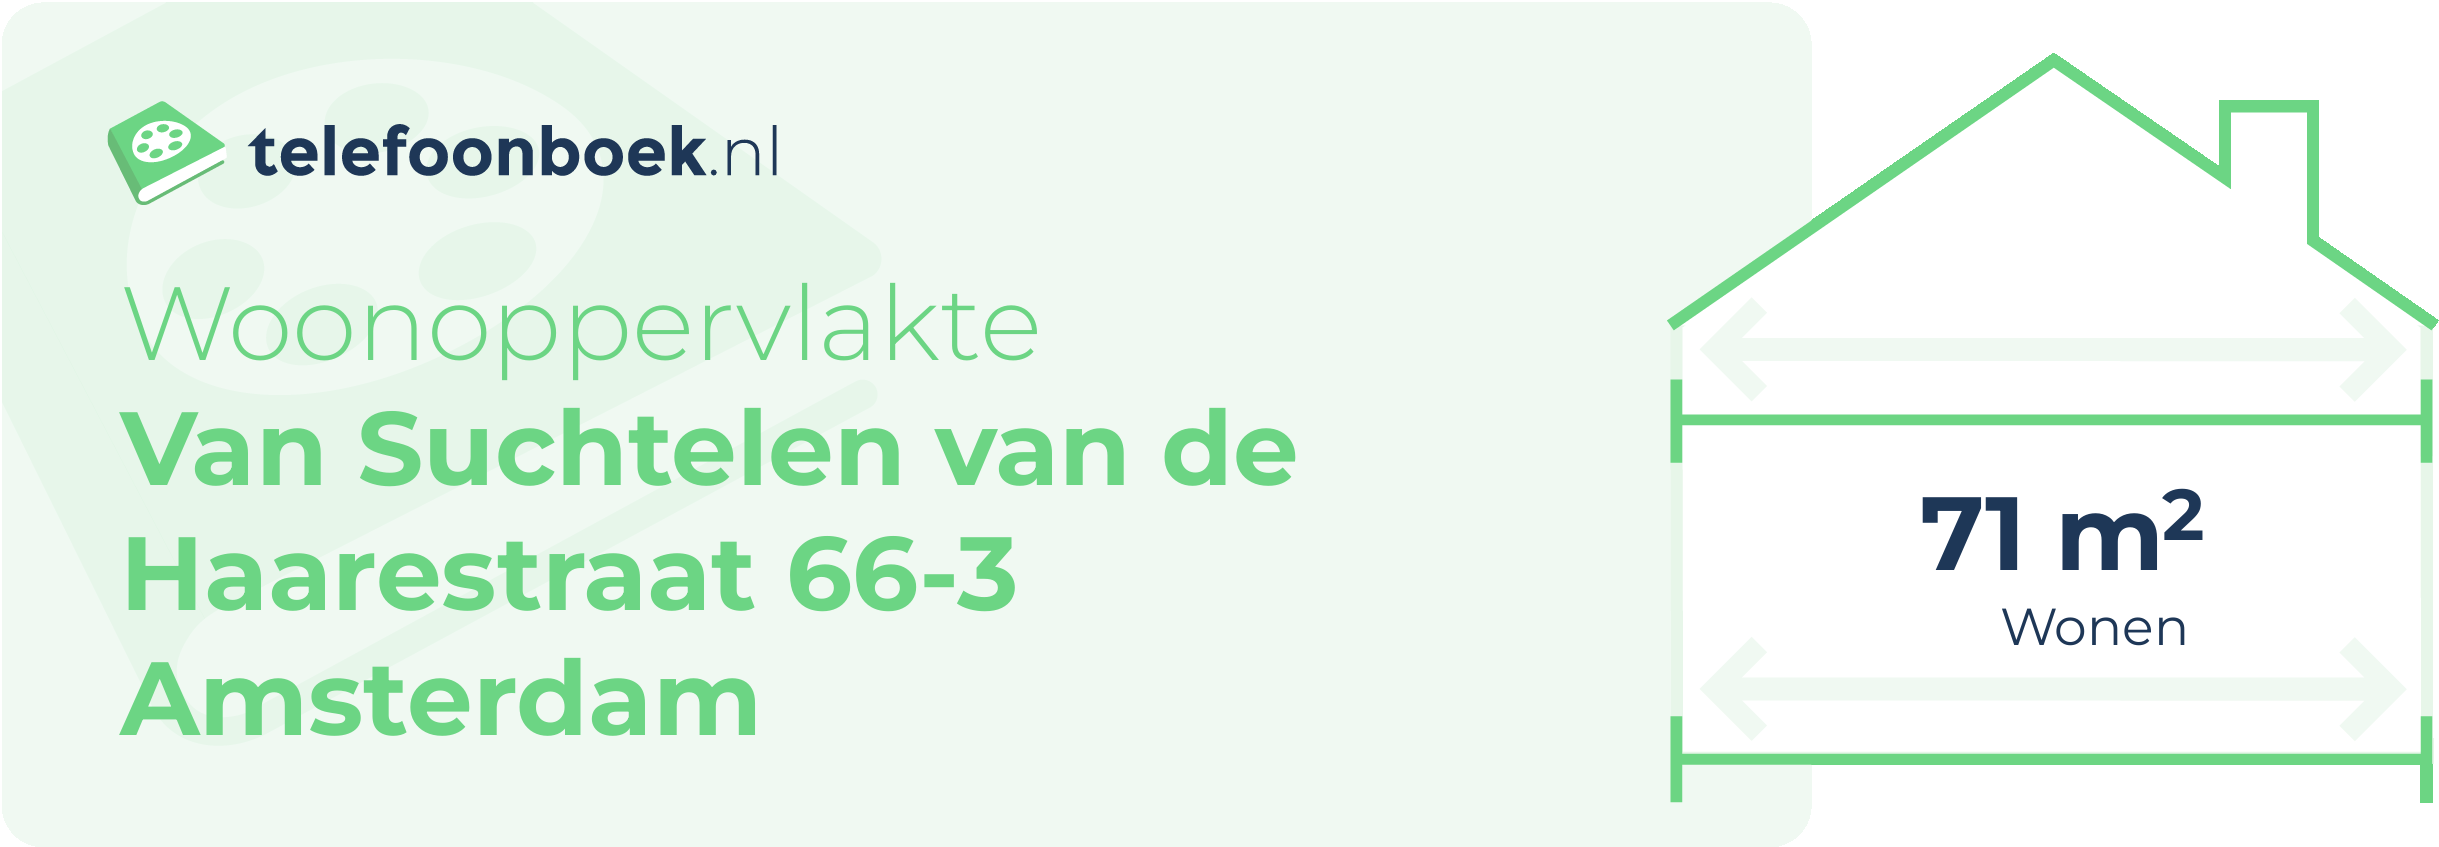 Woonoppervlakte Van Suchtelen Van De Haarestraat 66-3 Amsterdam